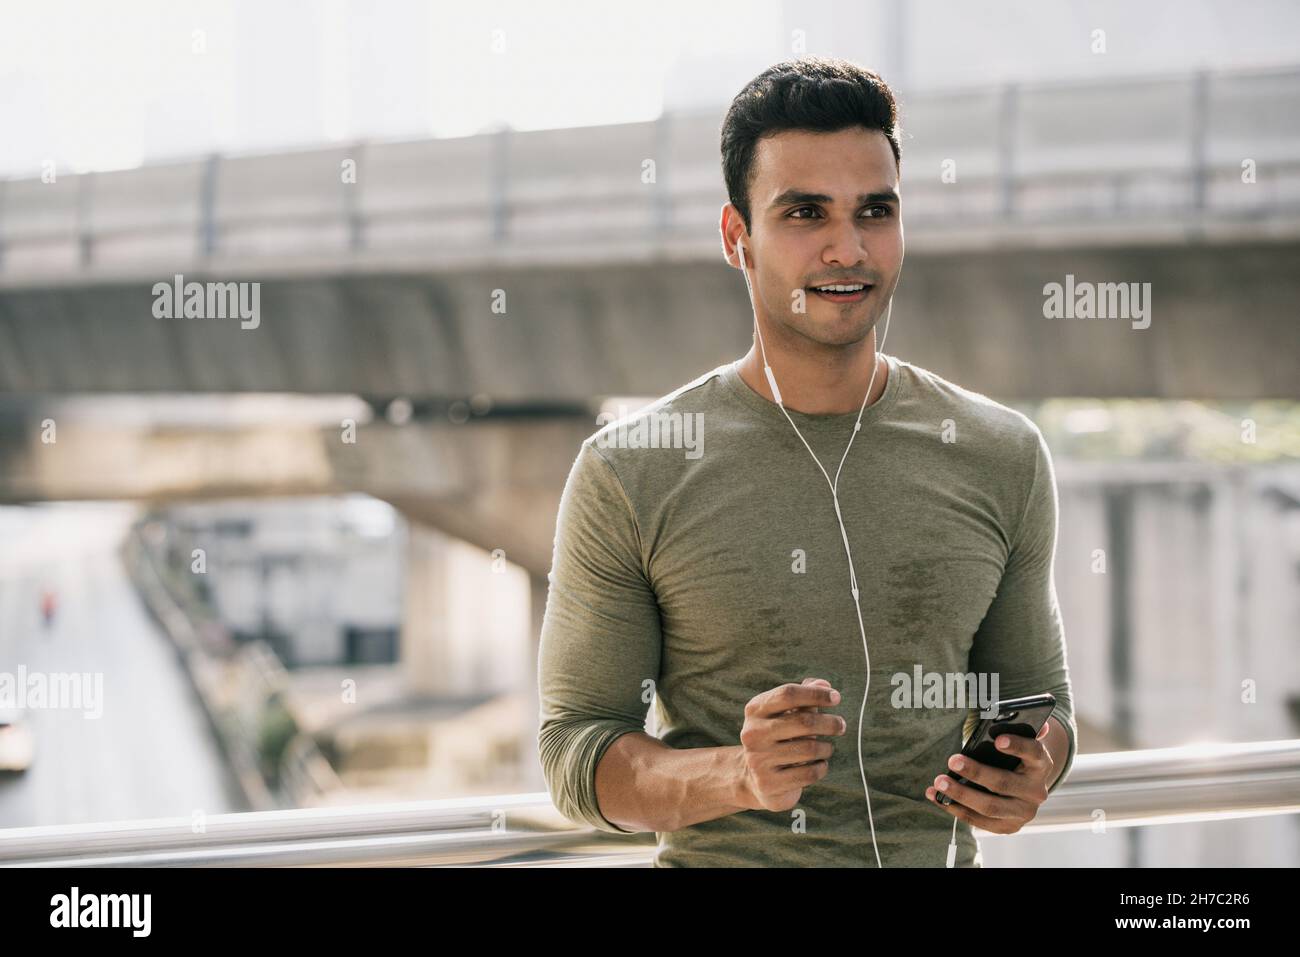 Sorridente giovane sudato bell'uomo indiano che ascolta musica su smartphone all'aperto in città dopo il jogging Foto Stock